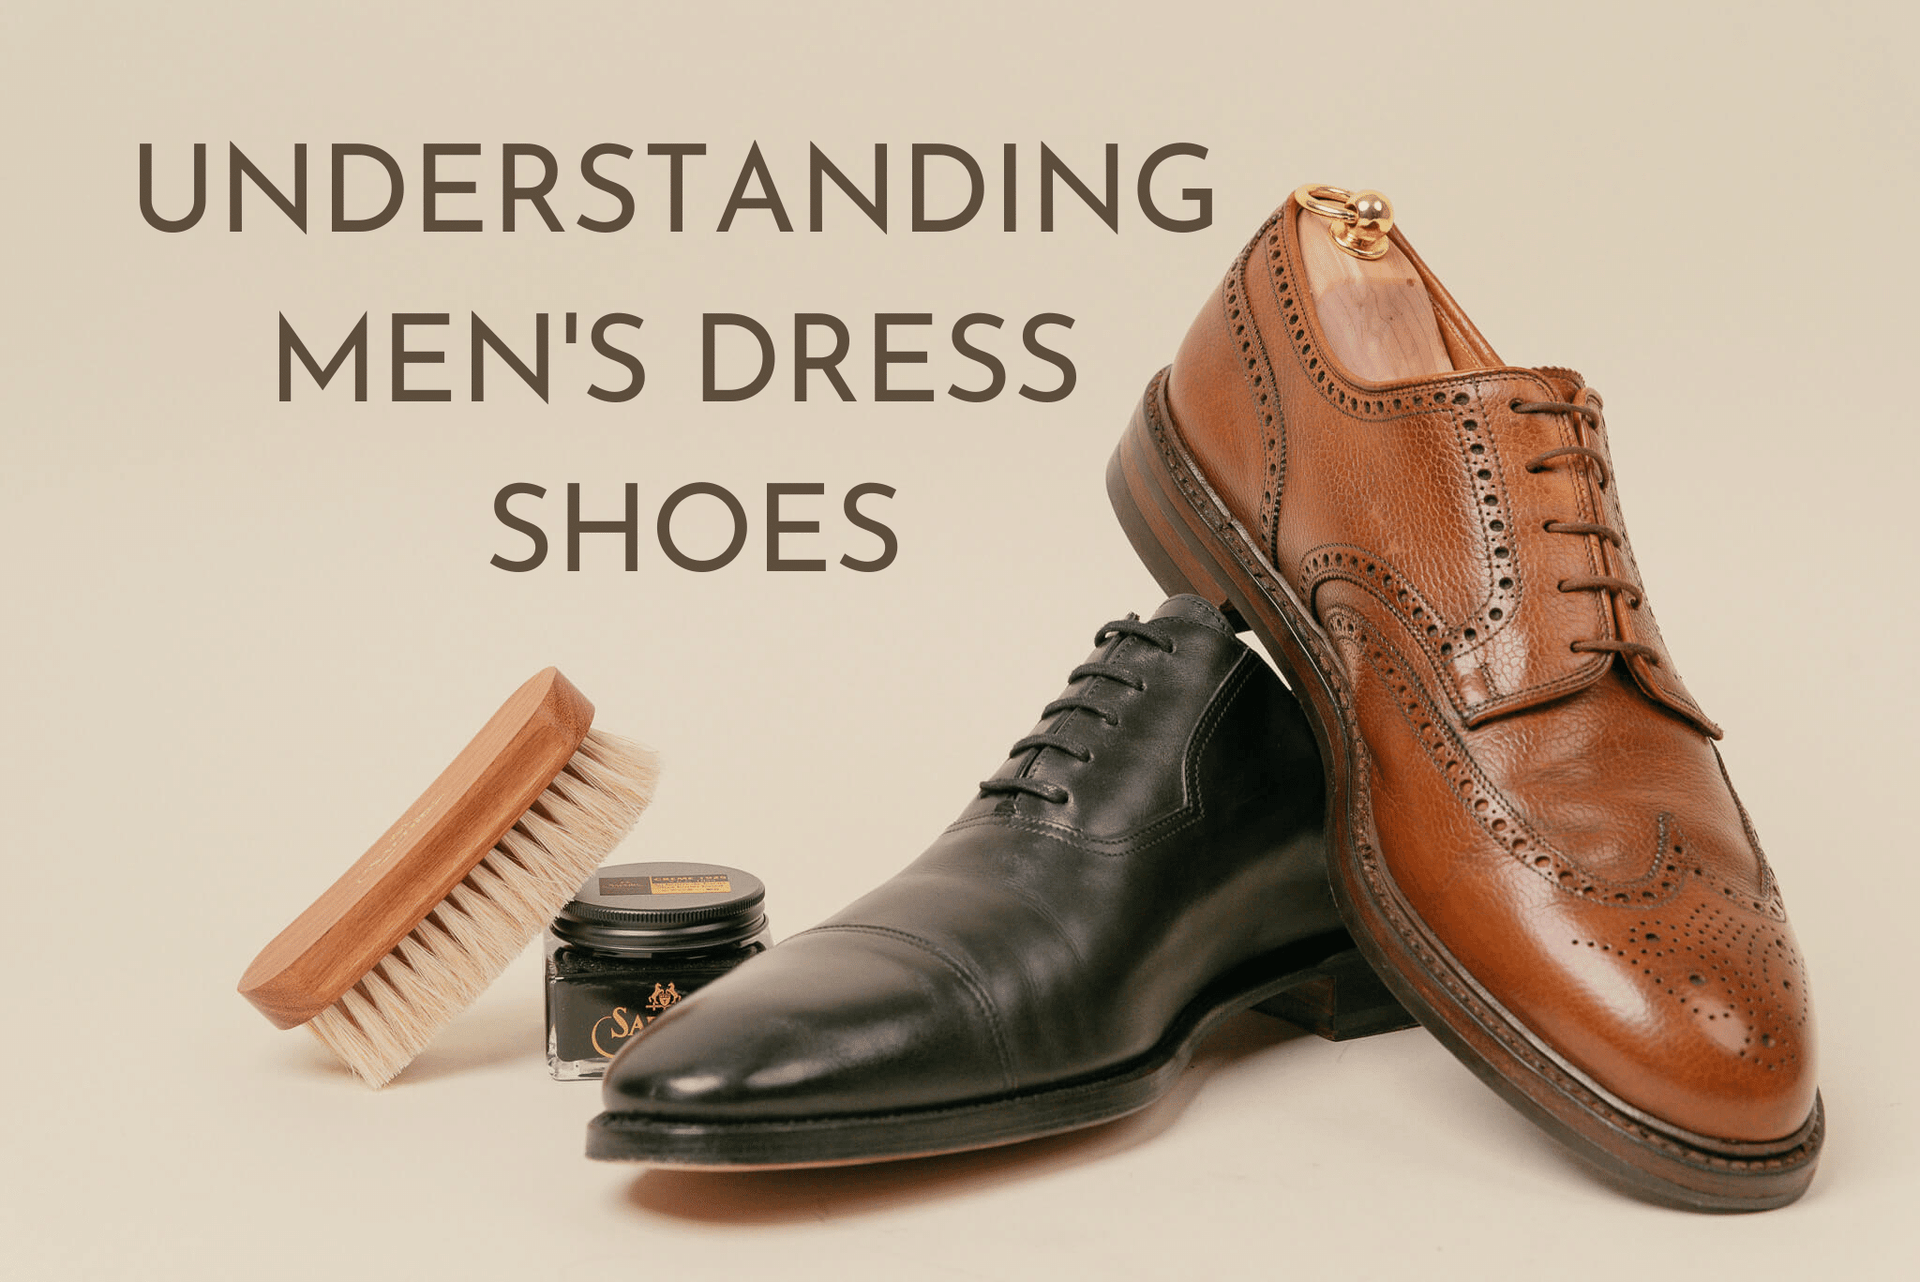 https://brillare.ca/cdn/shop/articles/Understanding_men_s_dress_shoe_blog_hero.png?v=1646354389&width=1920